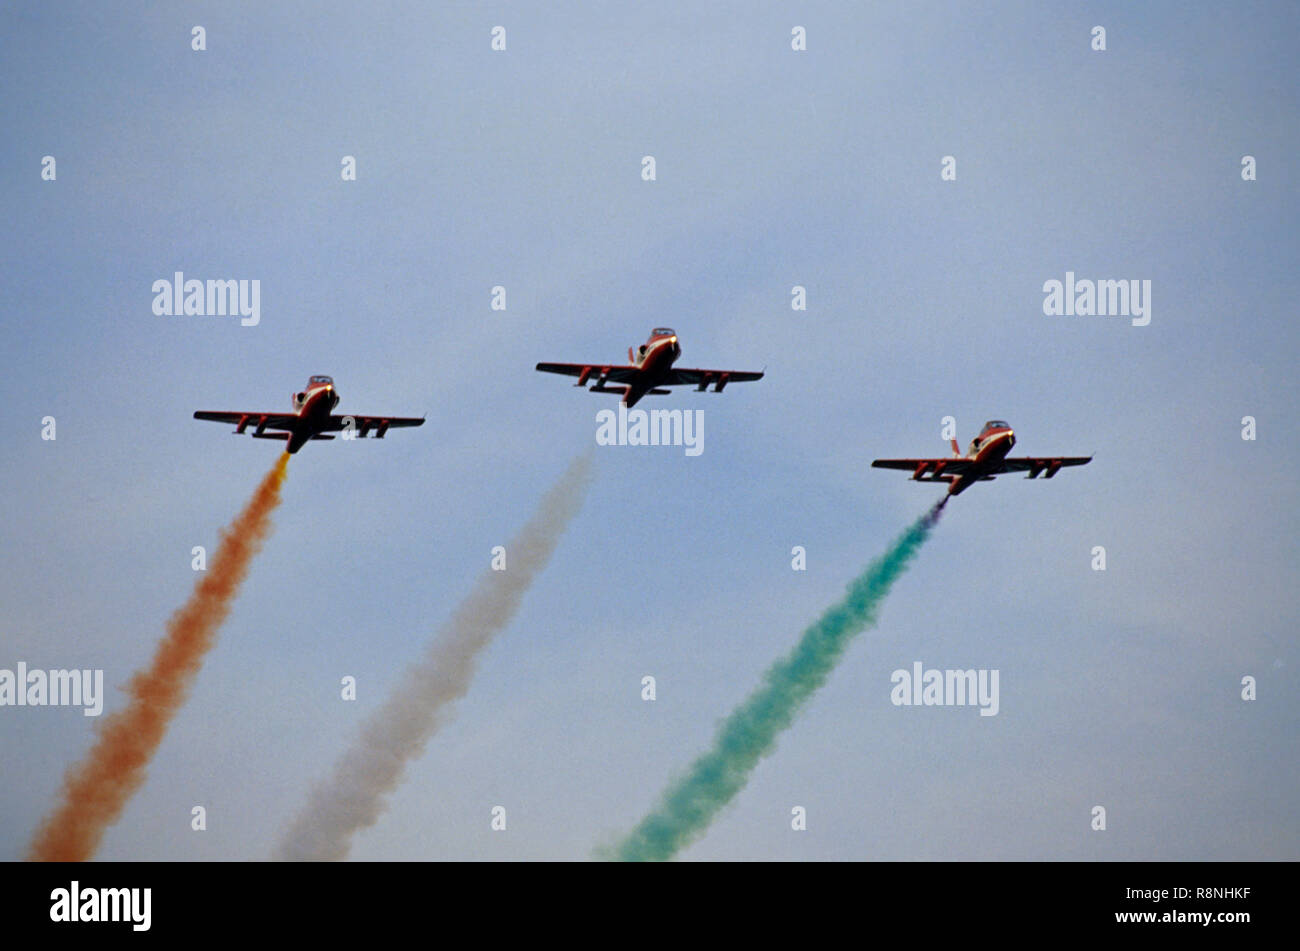 Avion de l'Armée de l'Air indienne volant trois avions formation air show drapeau de fumée de l'Inde drapeau indien Banque D'Images